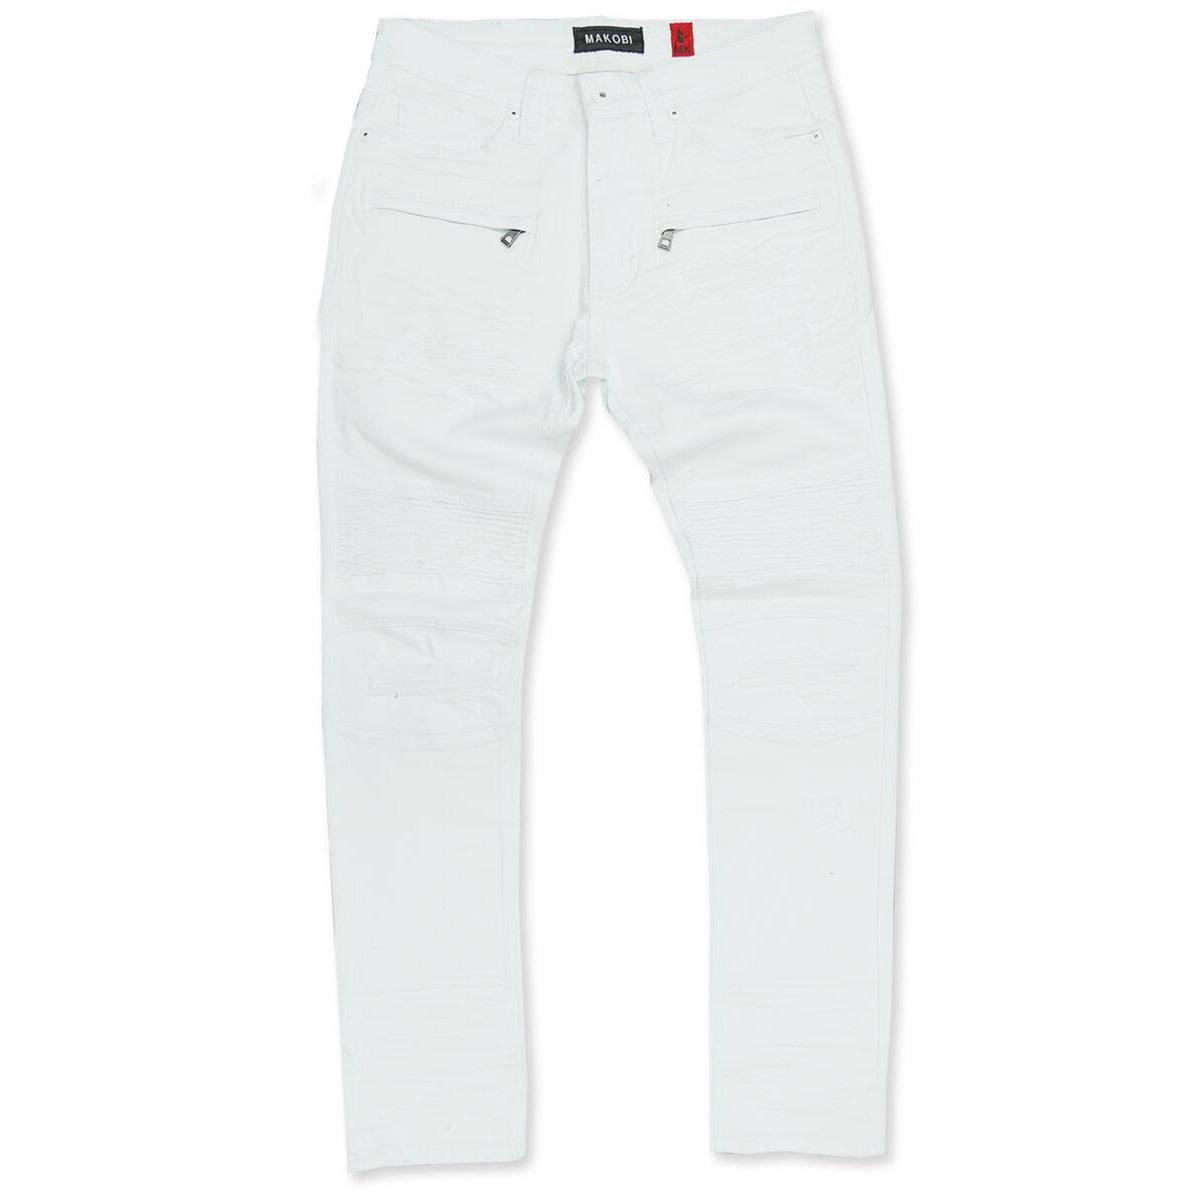 شلوار جین پارچه ای تکه تکه شده M1960 - سفید